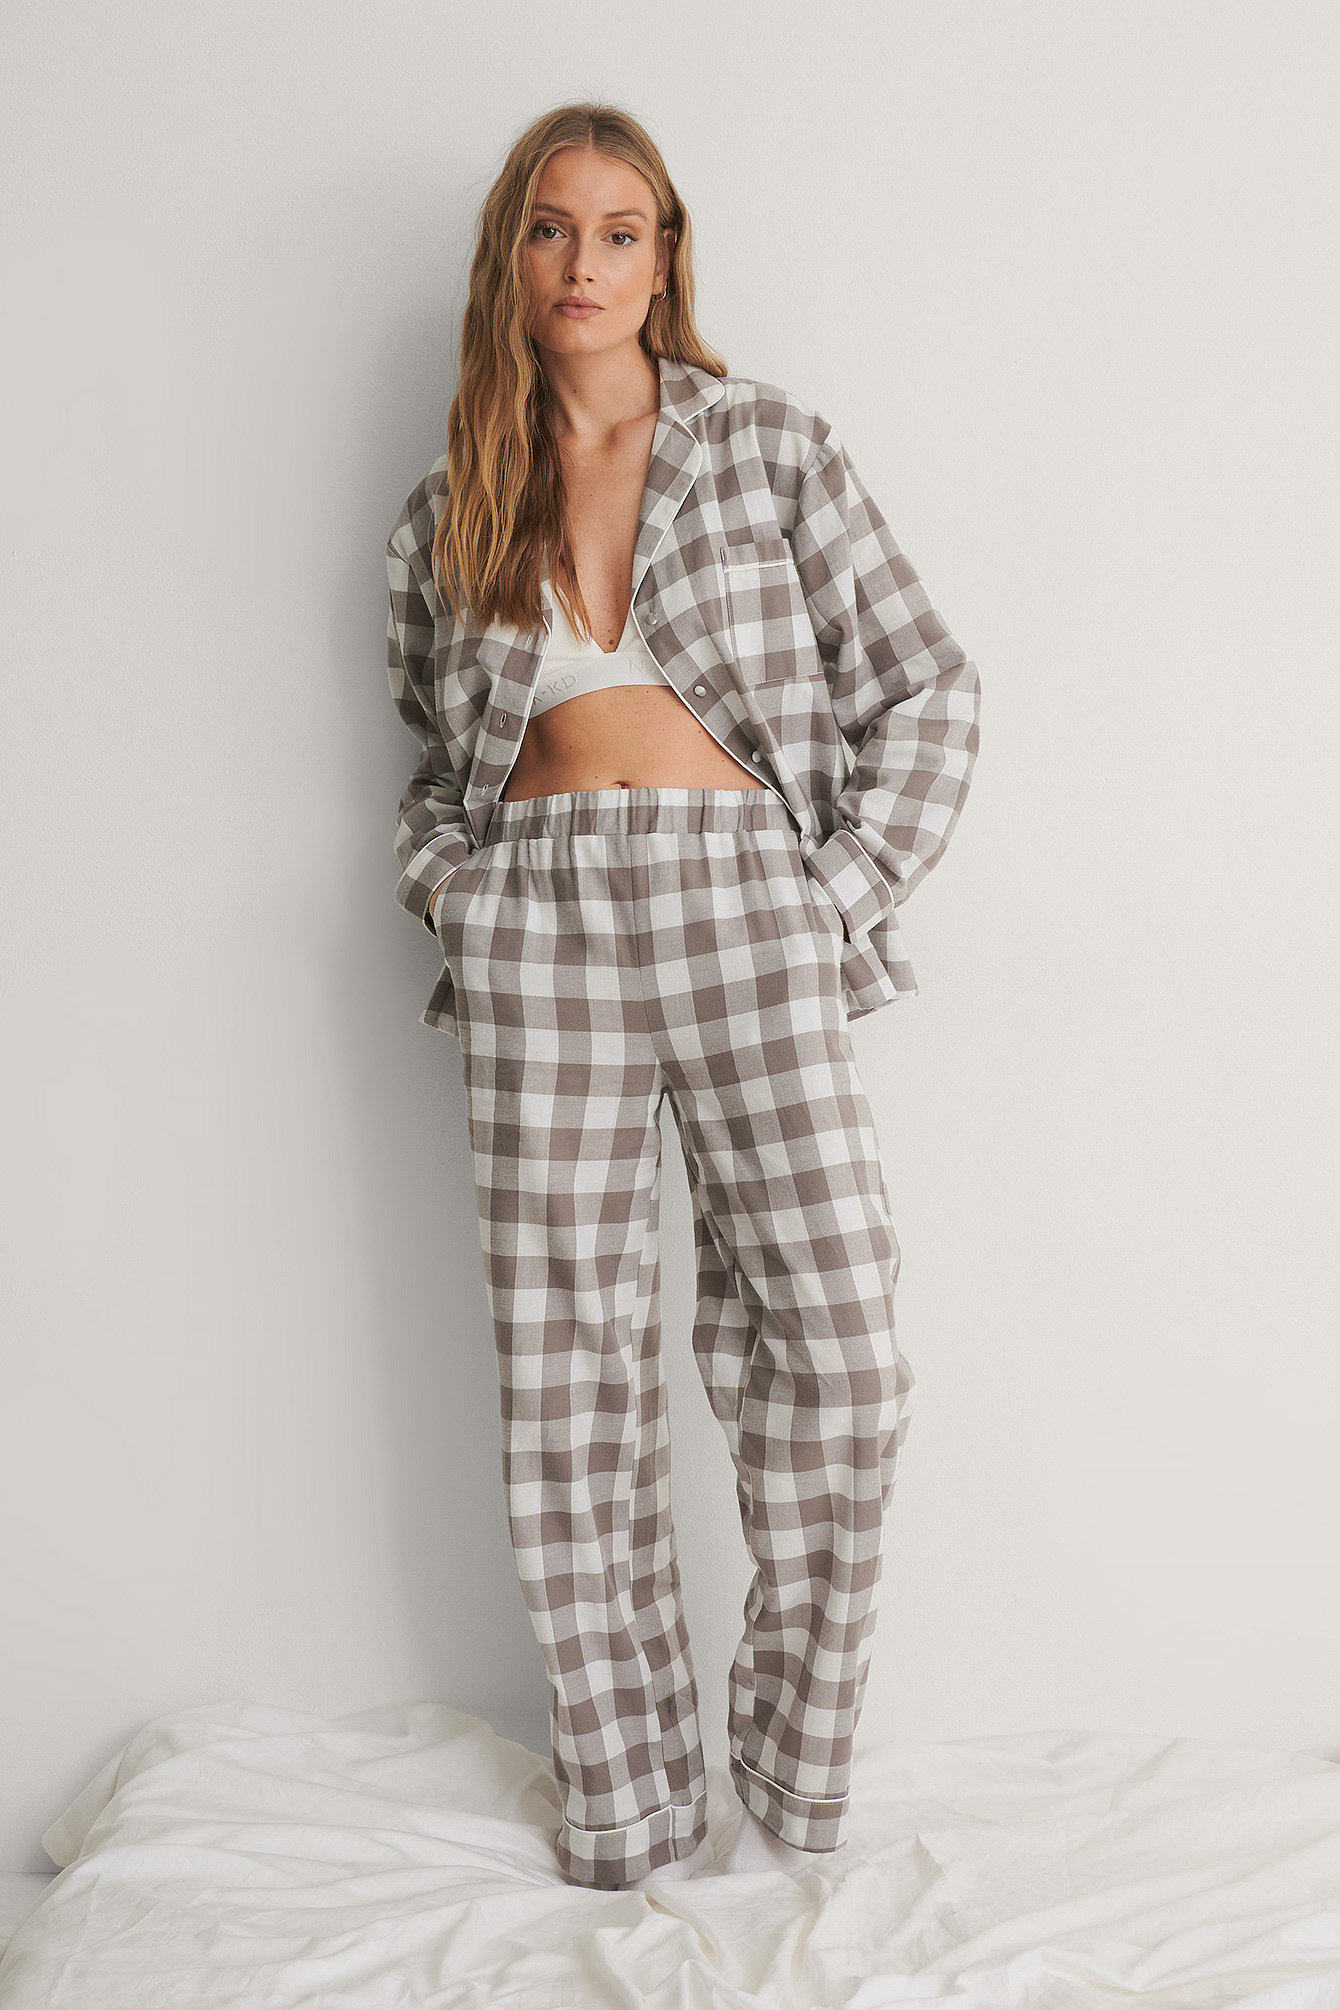 Fannel Pyjamas Pants Outfit.